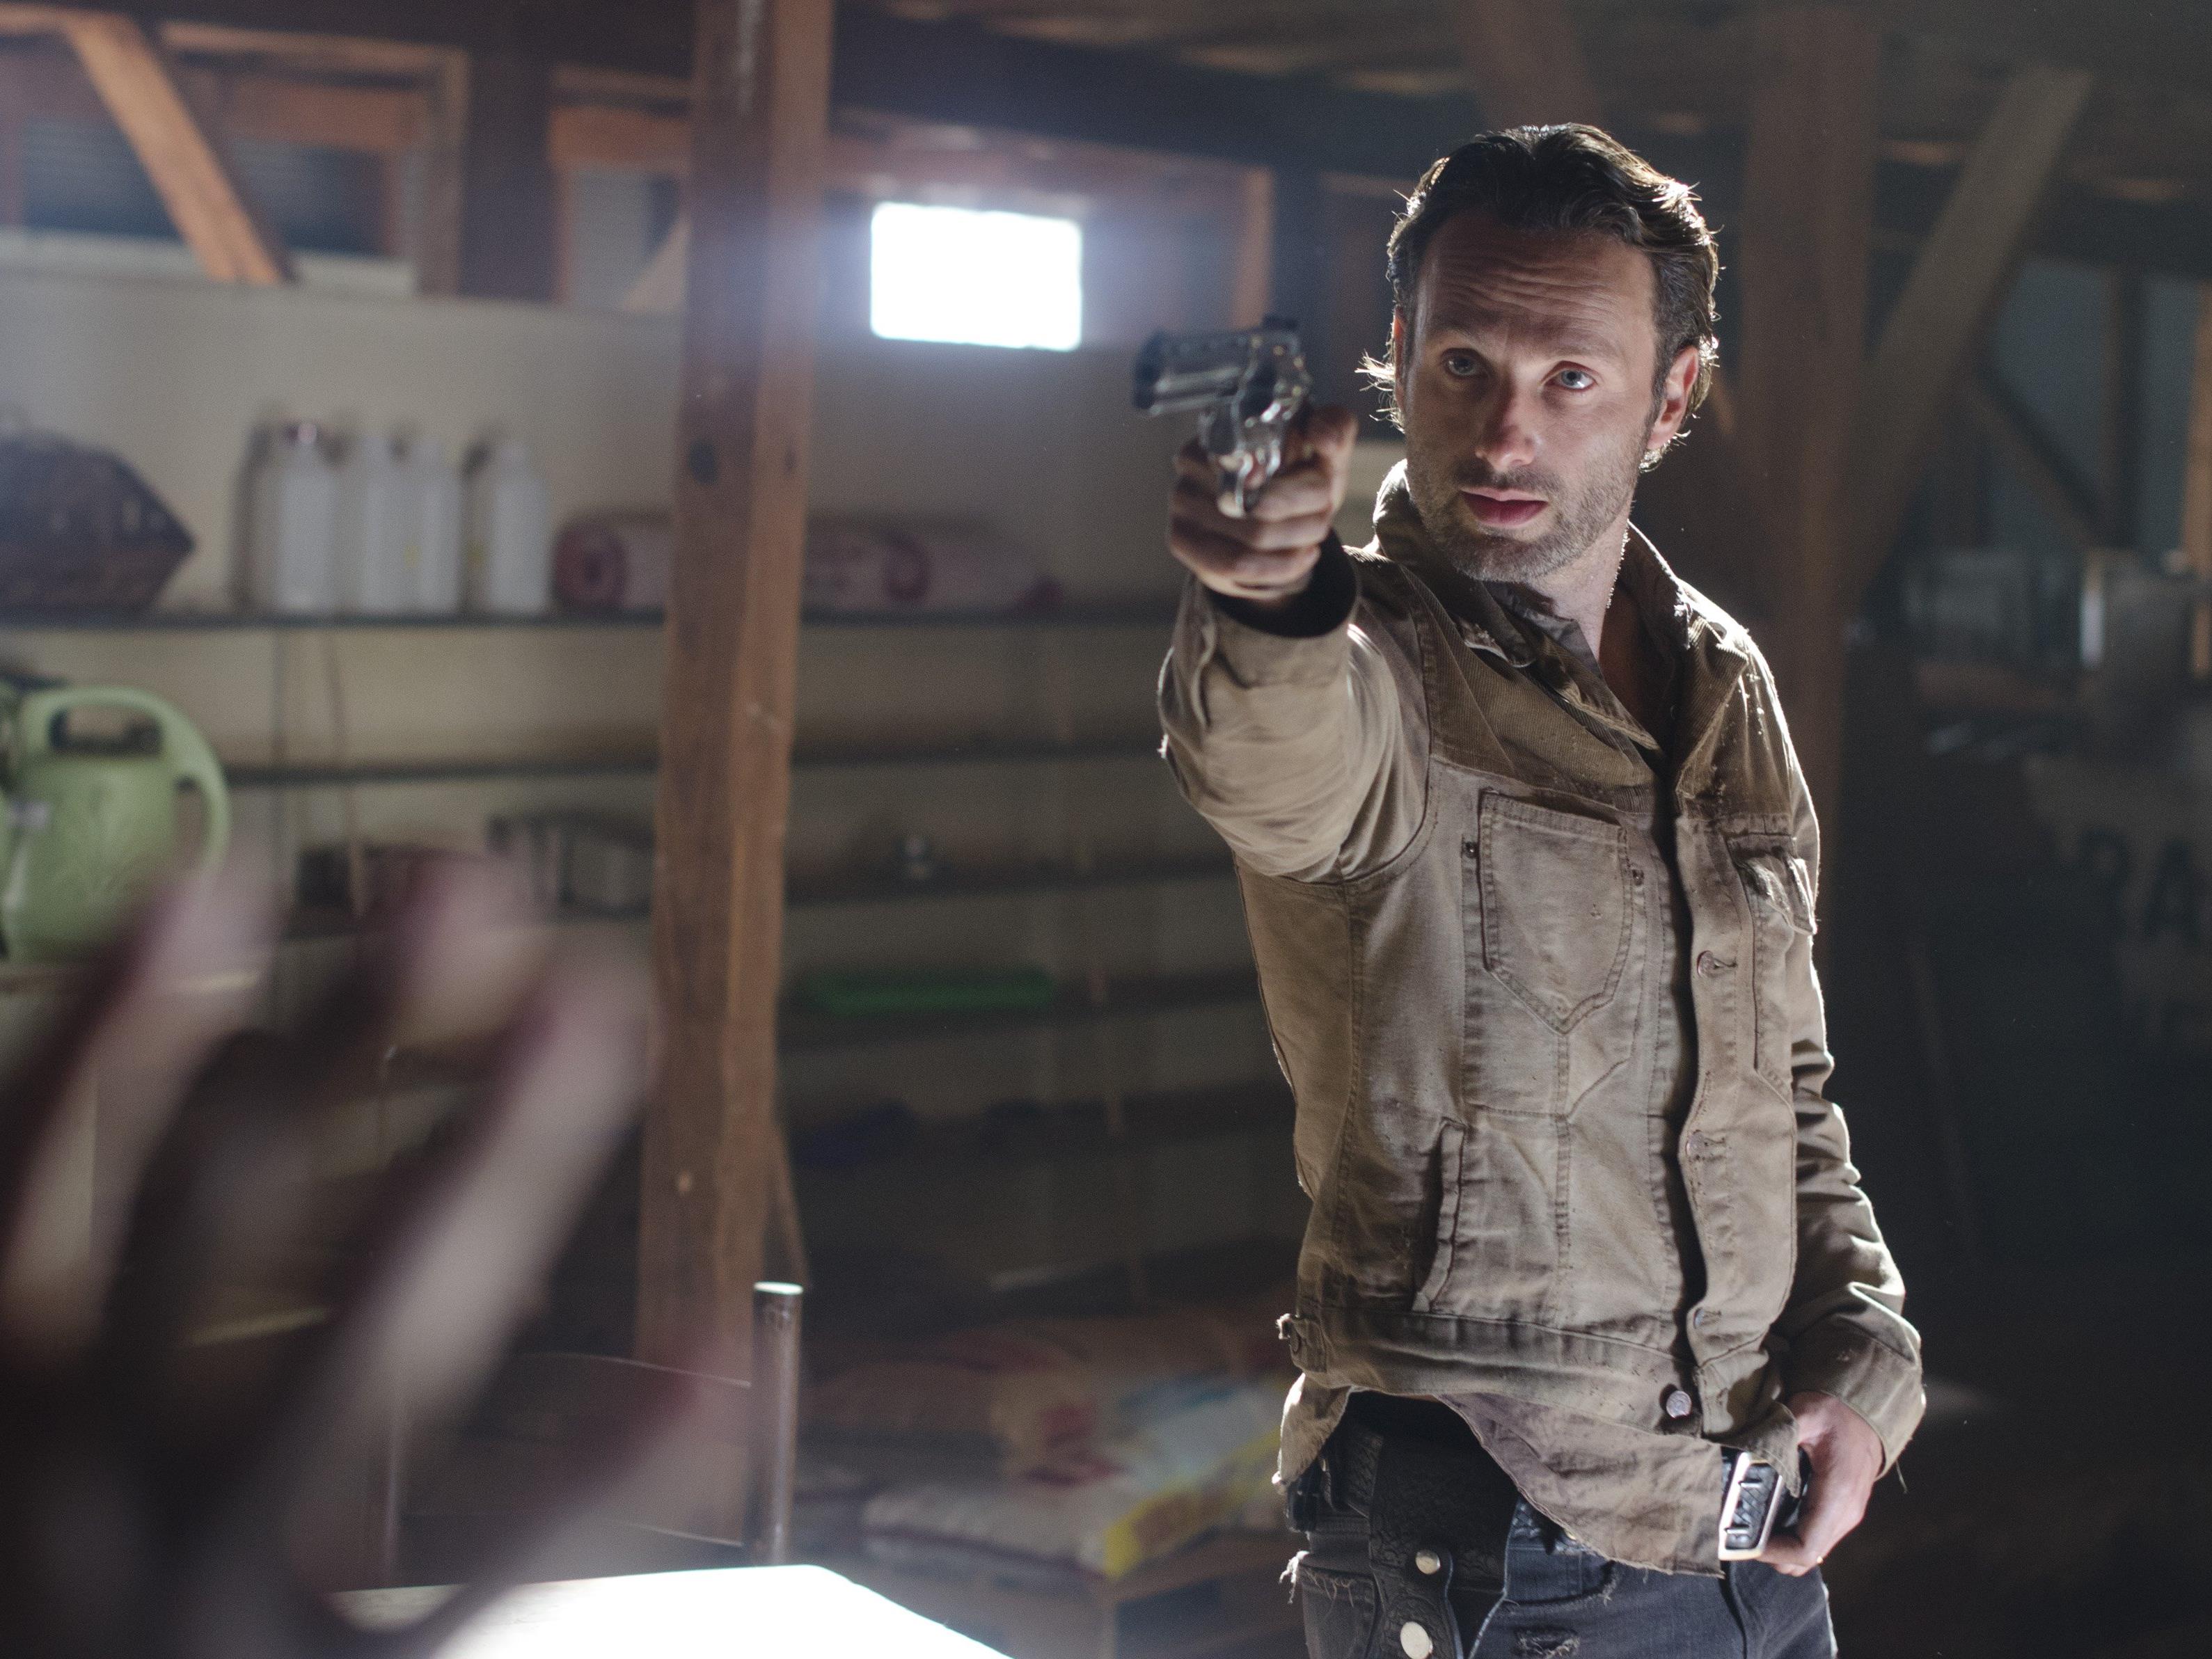 Am 25. Oktober findet die Sky Night zur 7. Staffel von "The Walking Dead" statt.